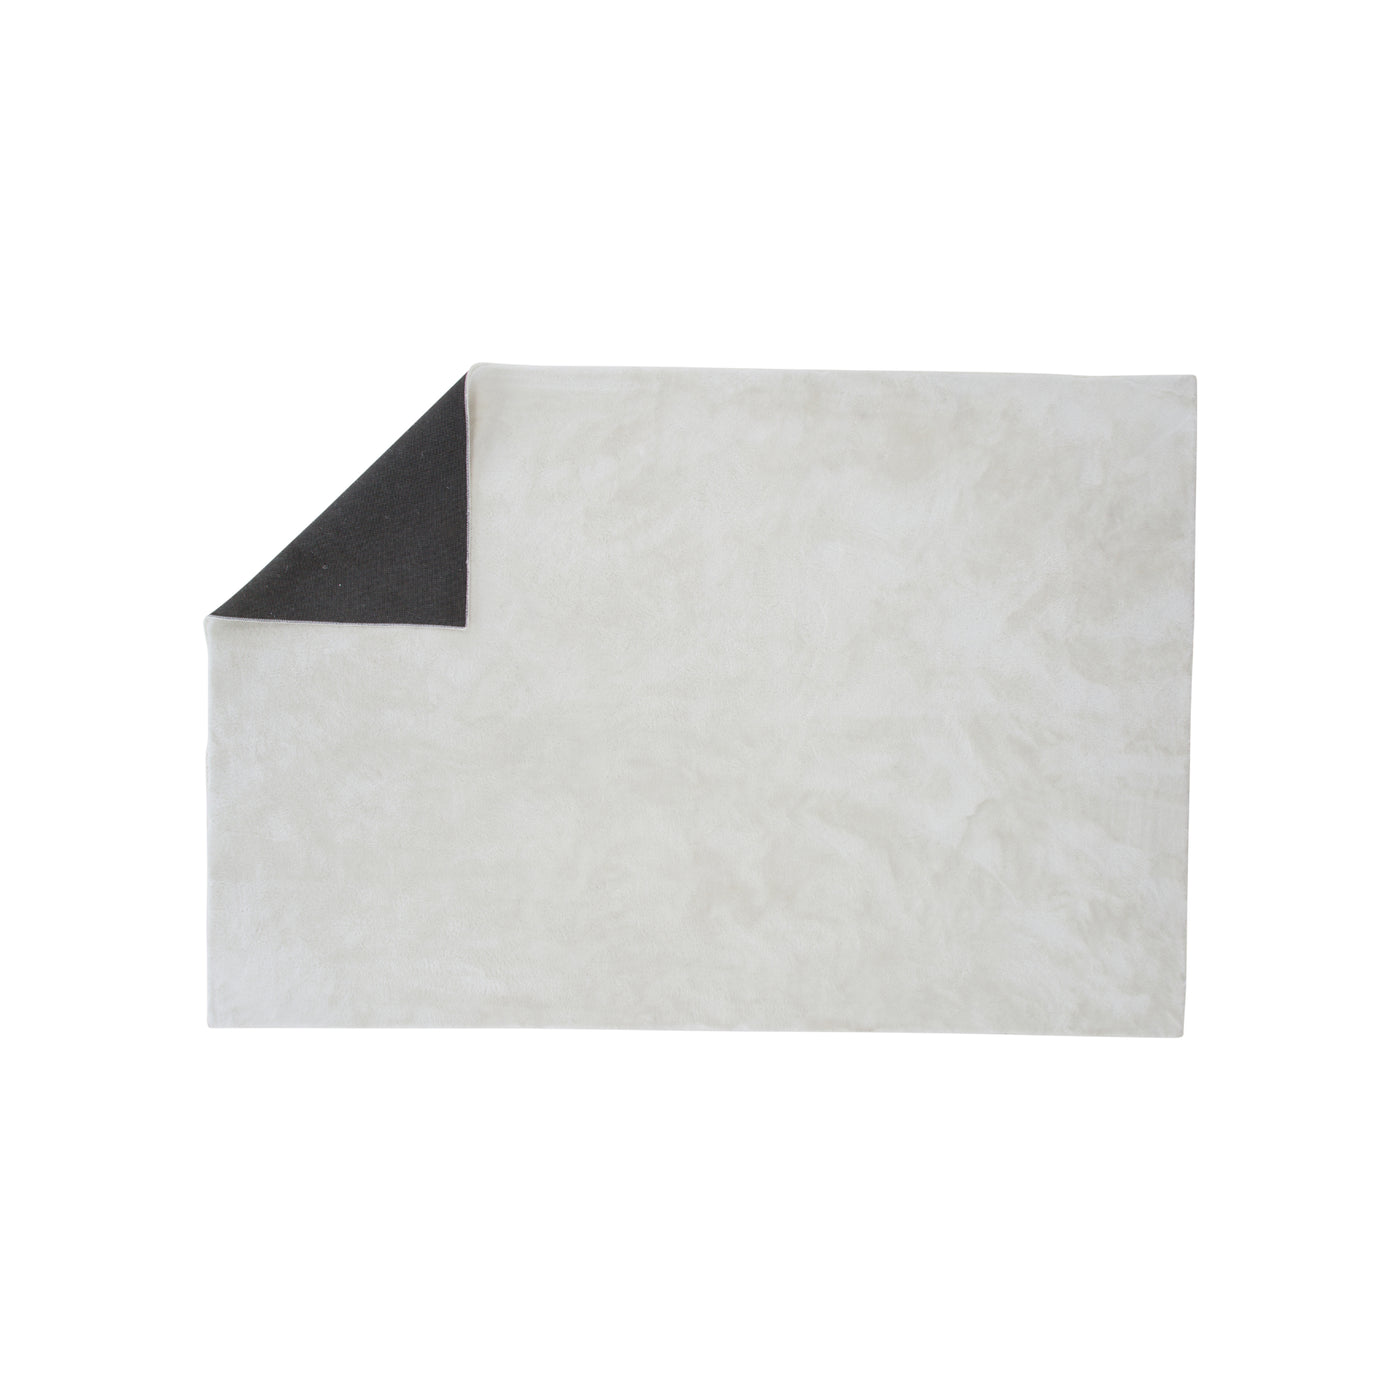 Bloswen Polyester-Teppich – 160 x 230 – Weiß